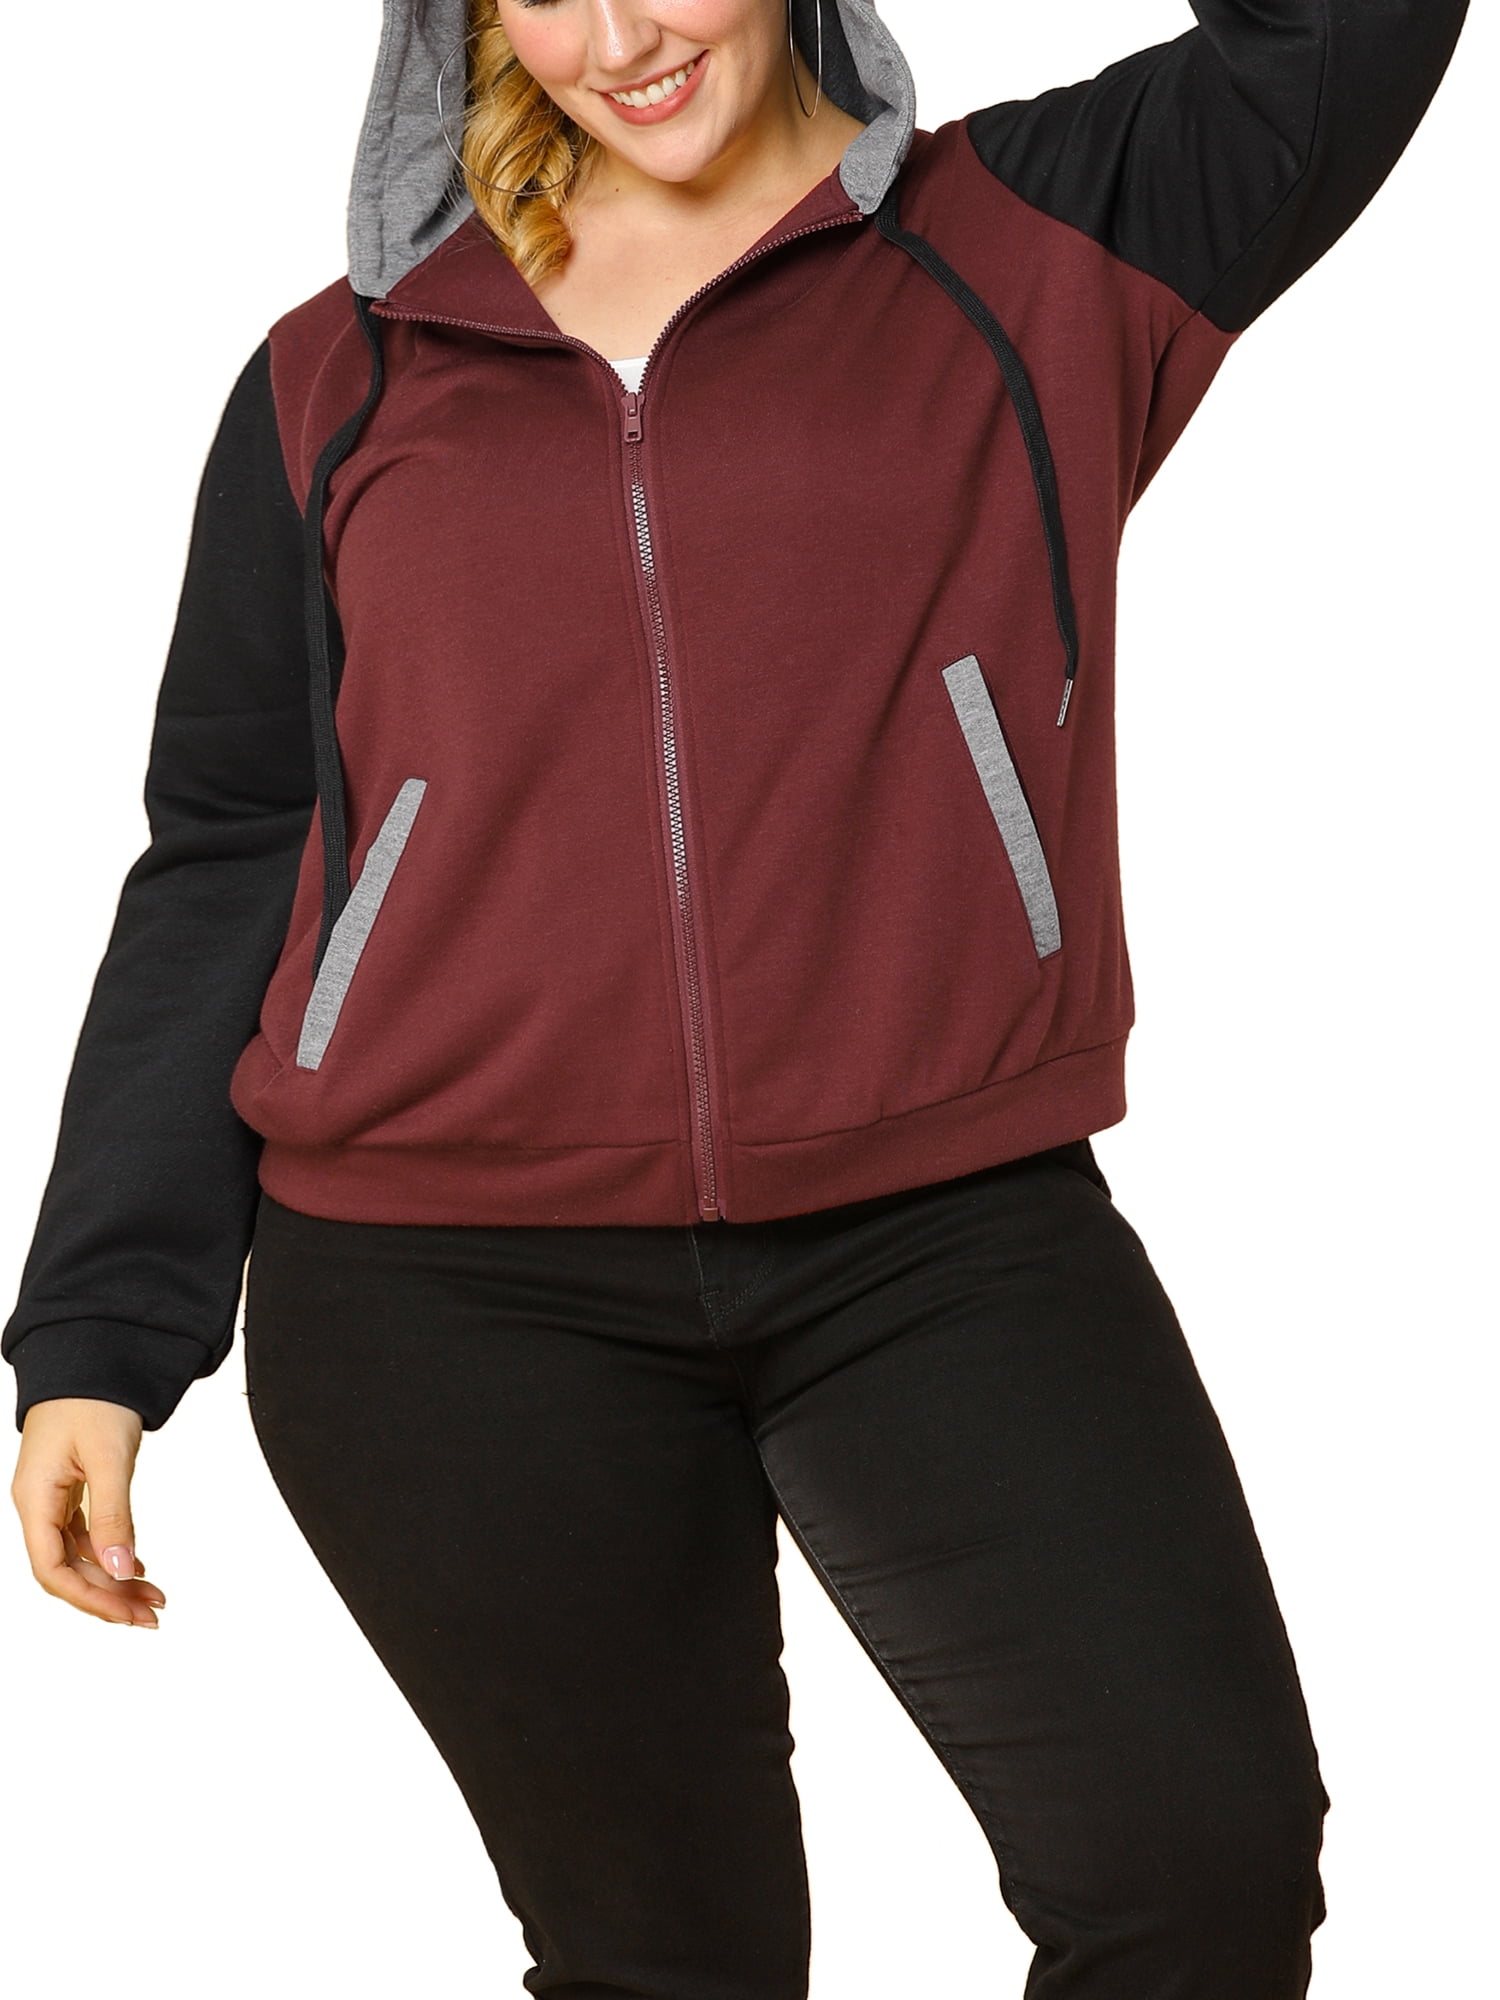 Agnes Orinda Women/'s Plus Size Jackets Contrast Color Block Stretch Denim Lapel Blazer